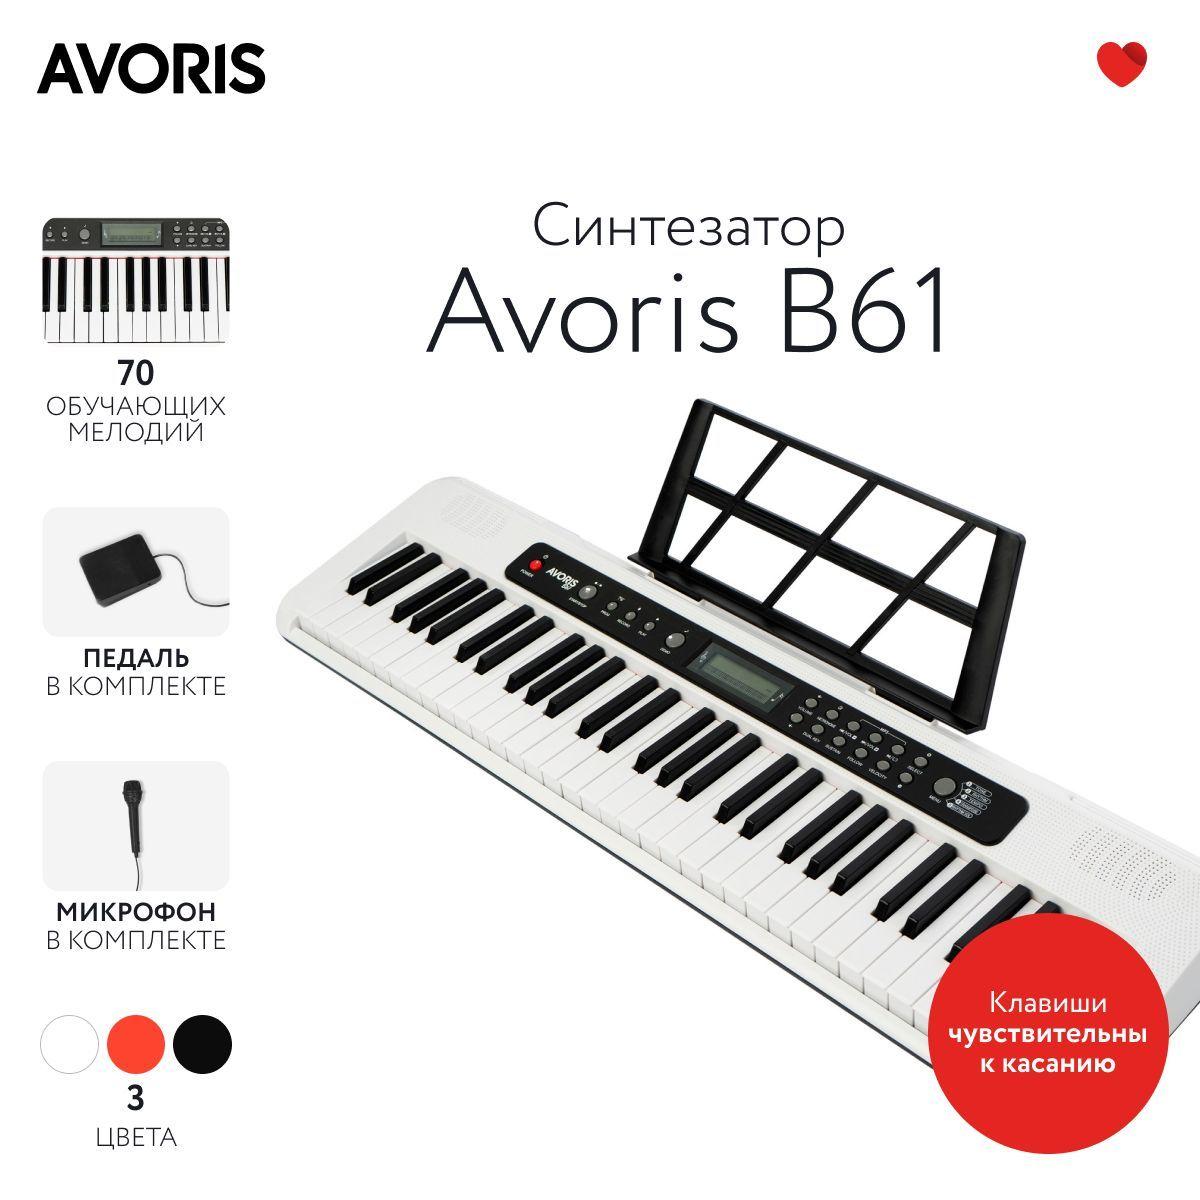 Avoris B61 - синтезатор с функцией обучения, чувствительный к касанию, белый цвет